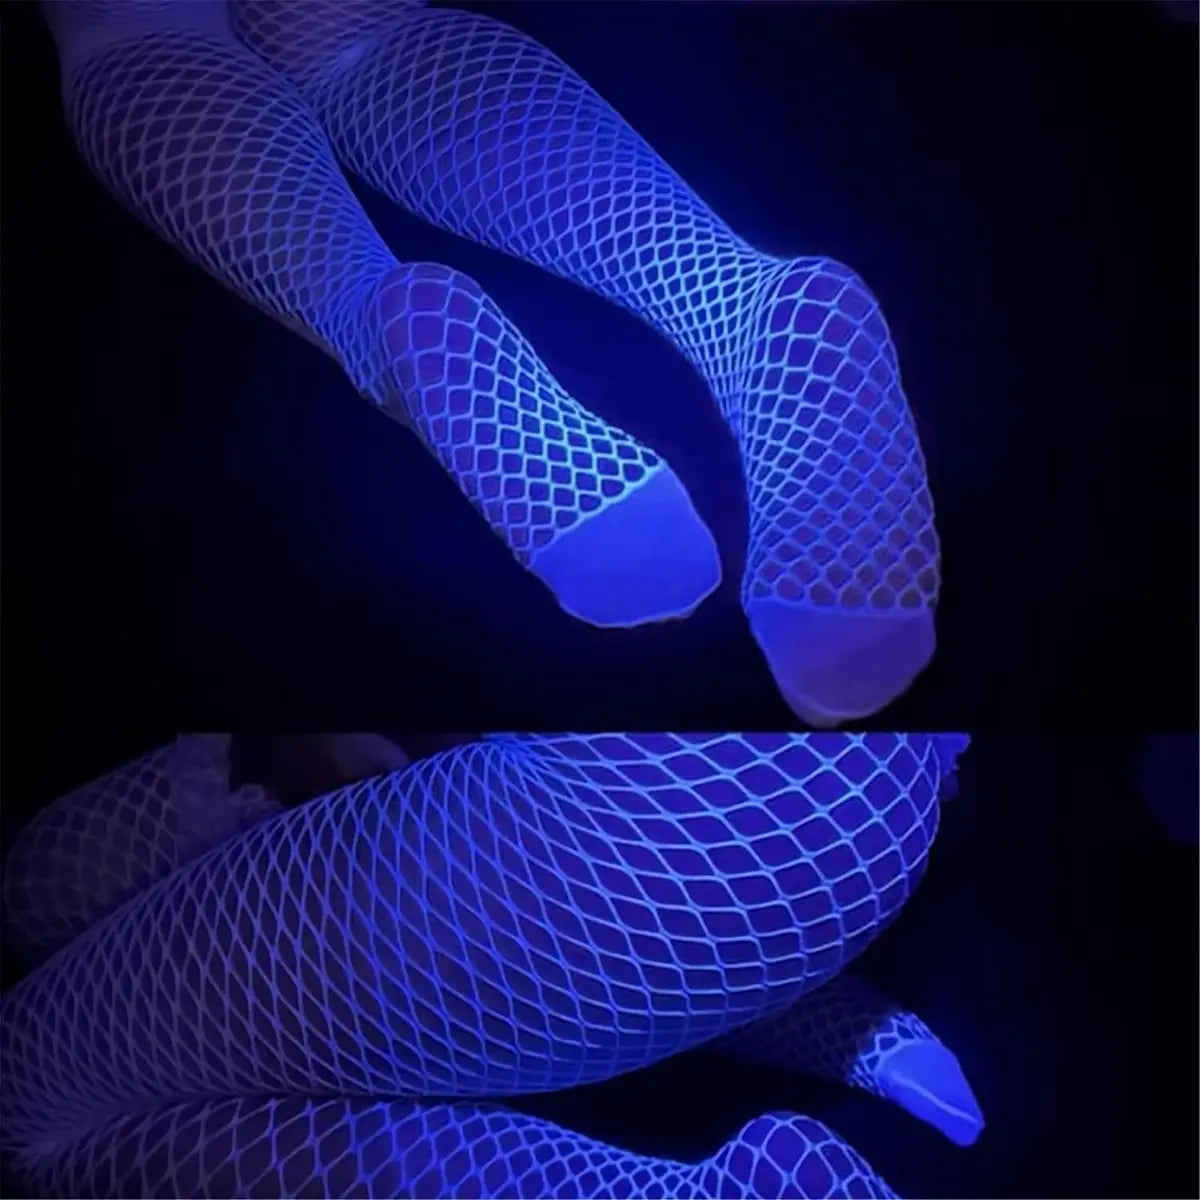 RaveGlow Neonblaue Netzstrumpfhosen – Leuchtendes Must-Have für jede Party